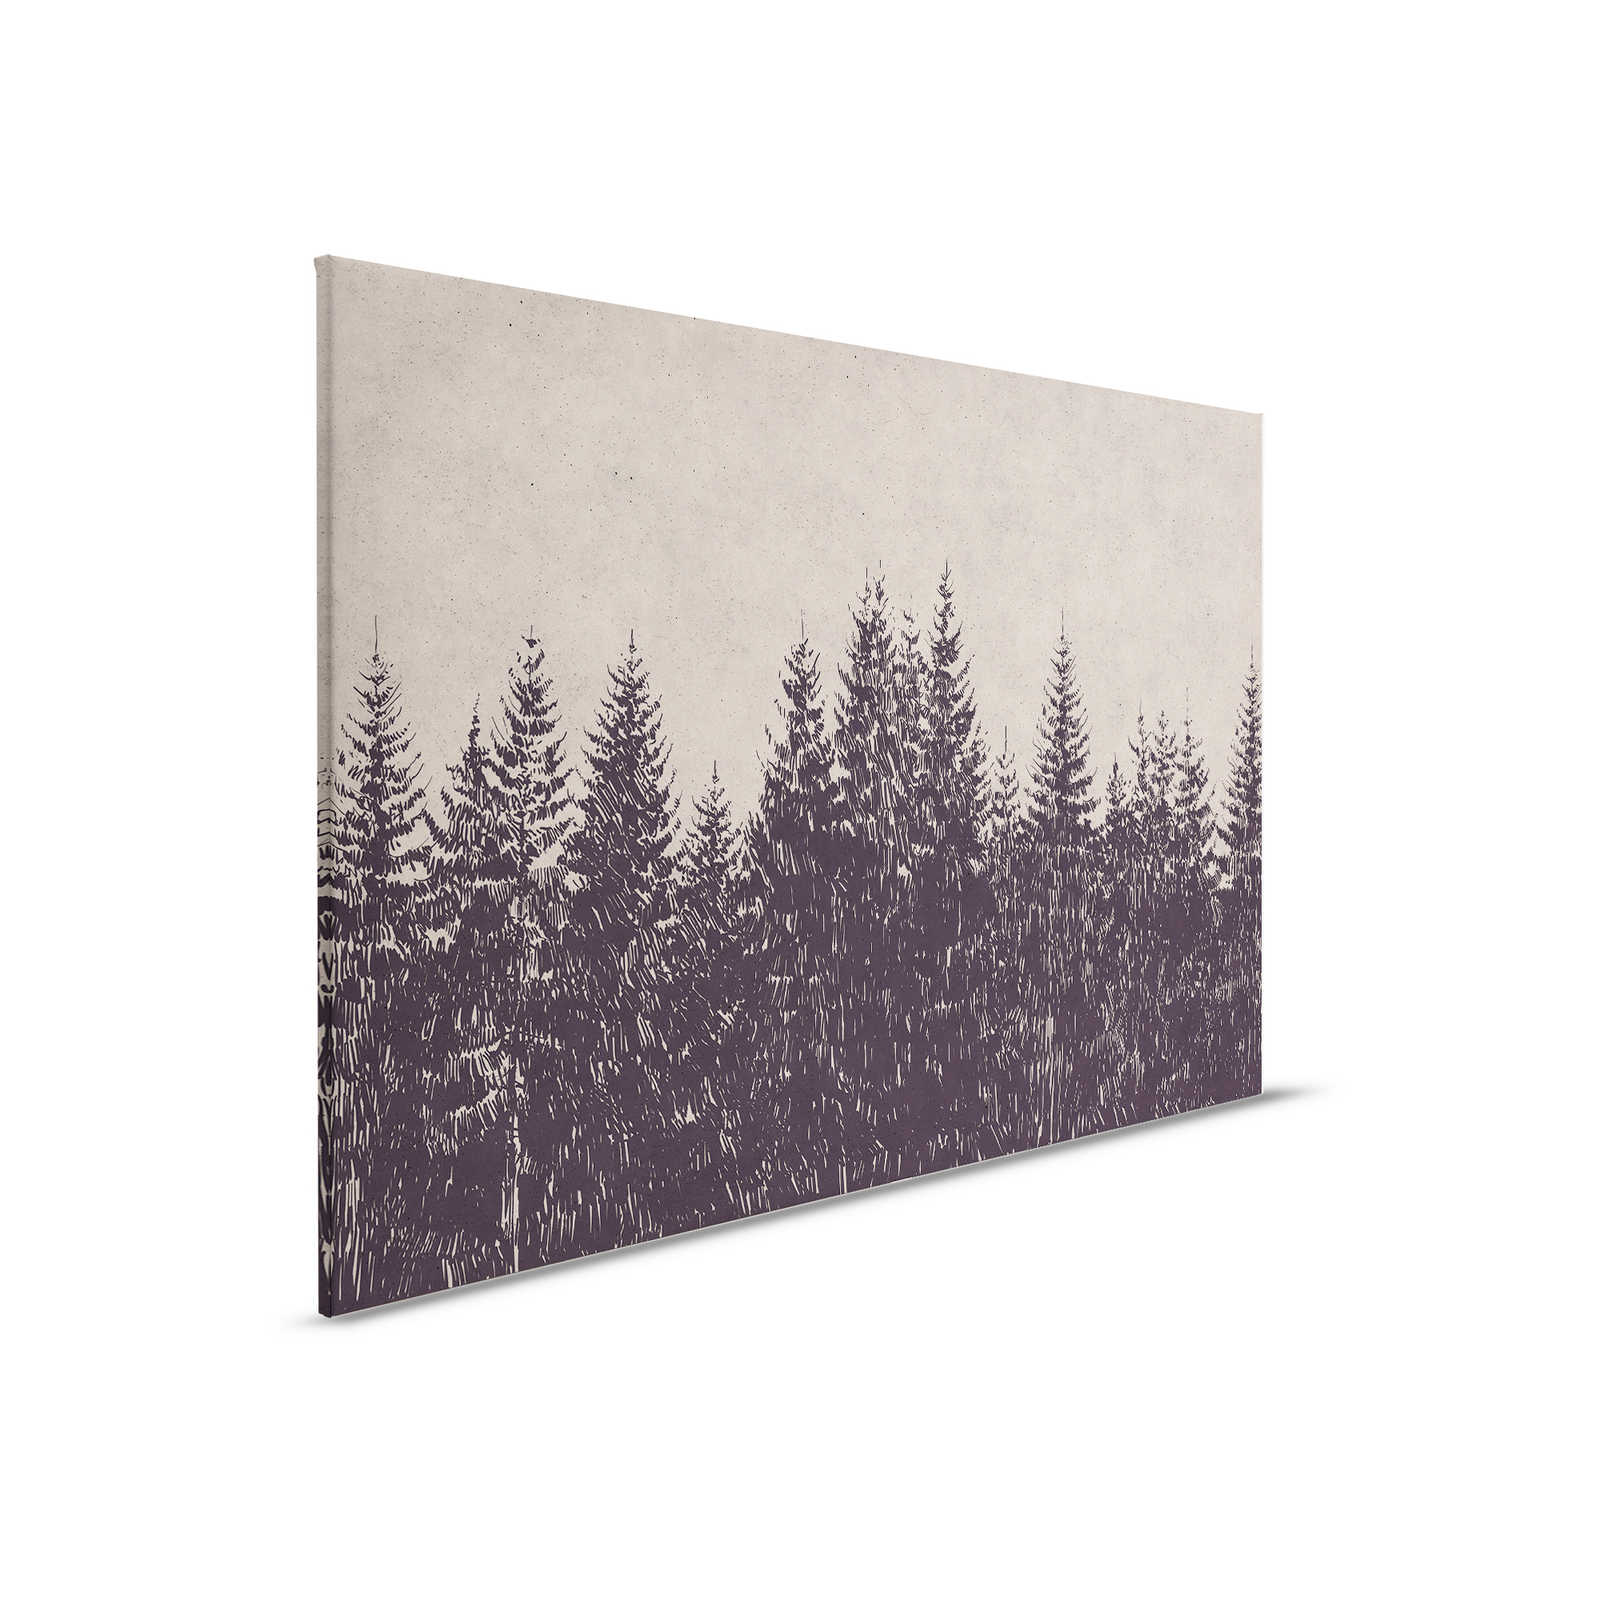 Leinwandbild Wald Tannen im Zeichenstil – 0,90 m x 0,60 m
